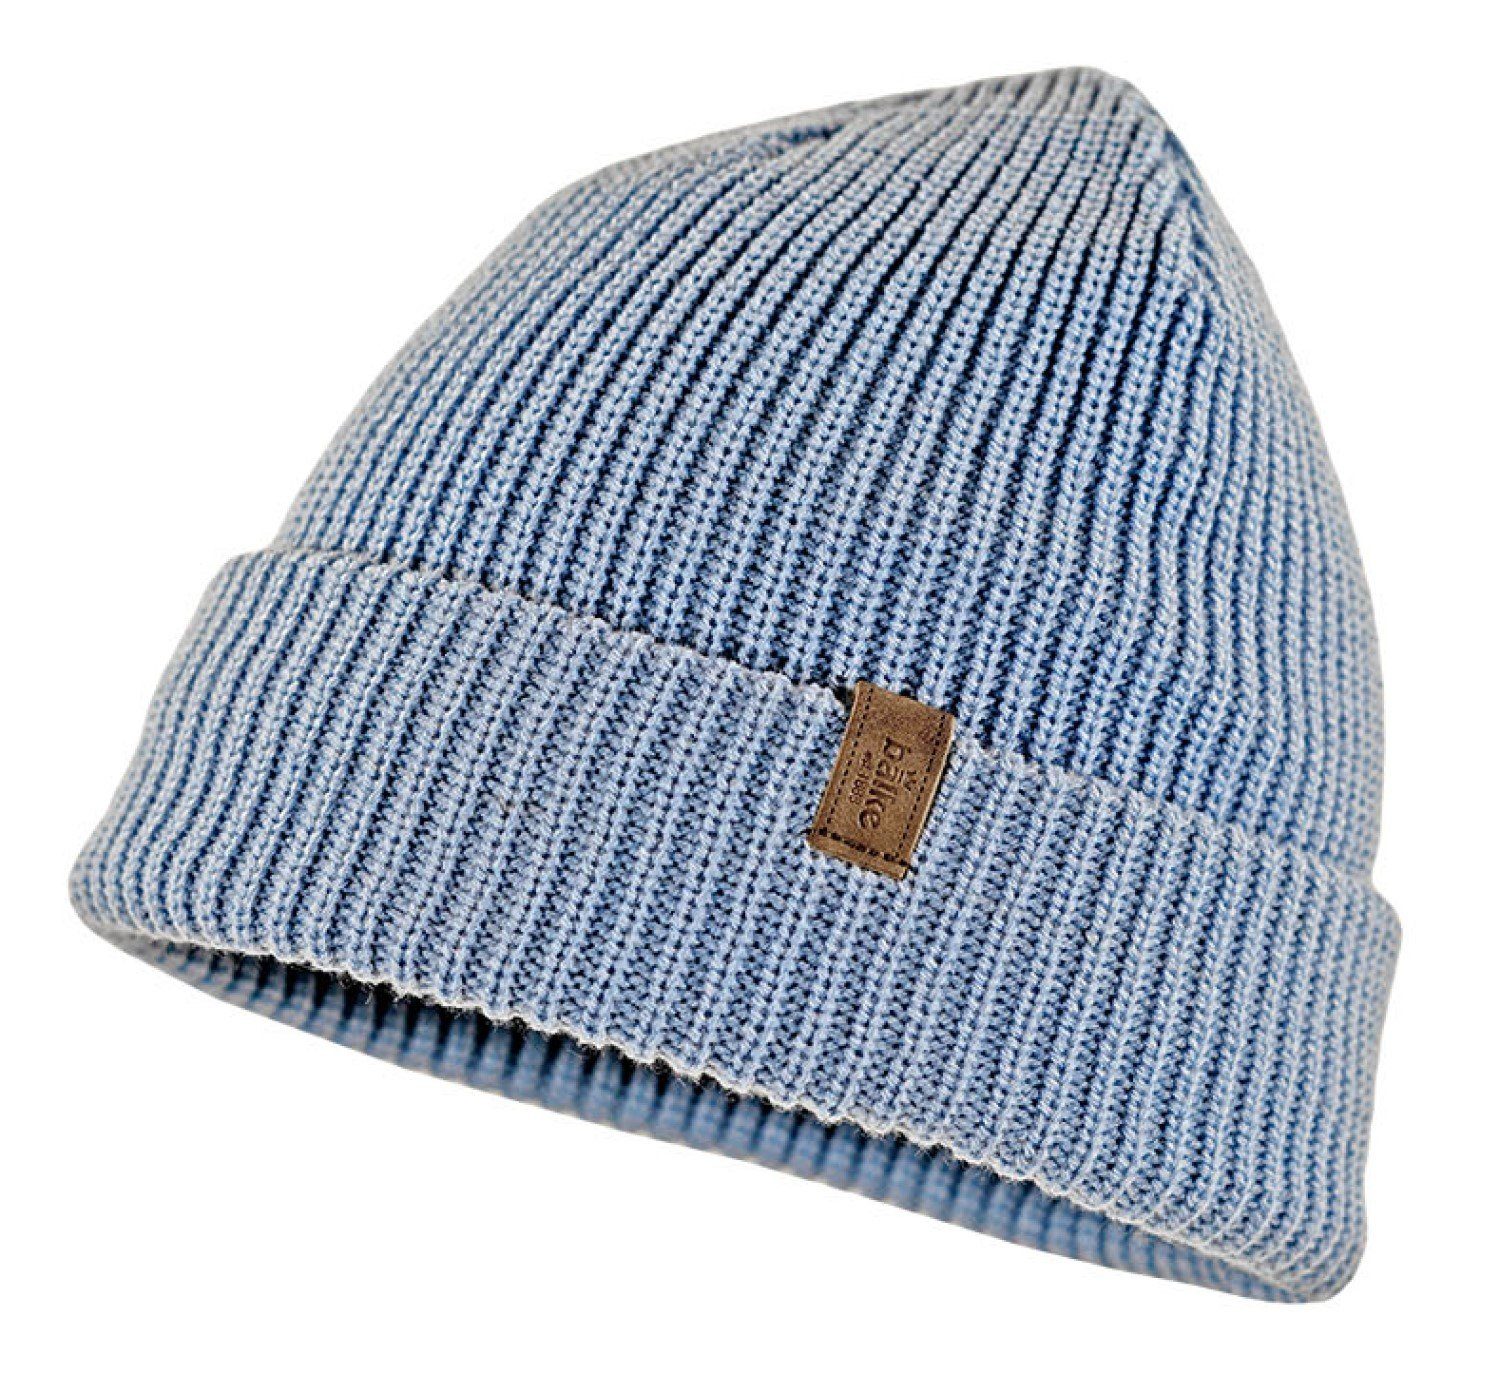 Balke 229 warme Strickmütze Grobstrick-Mütze bleu mit sehr Thinsulate-Ausstattung